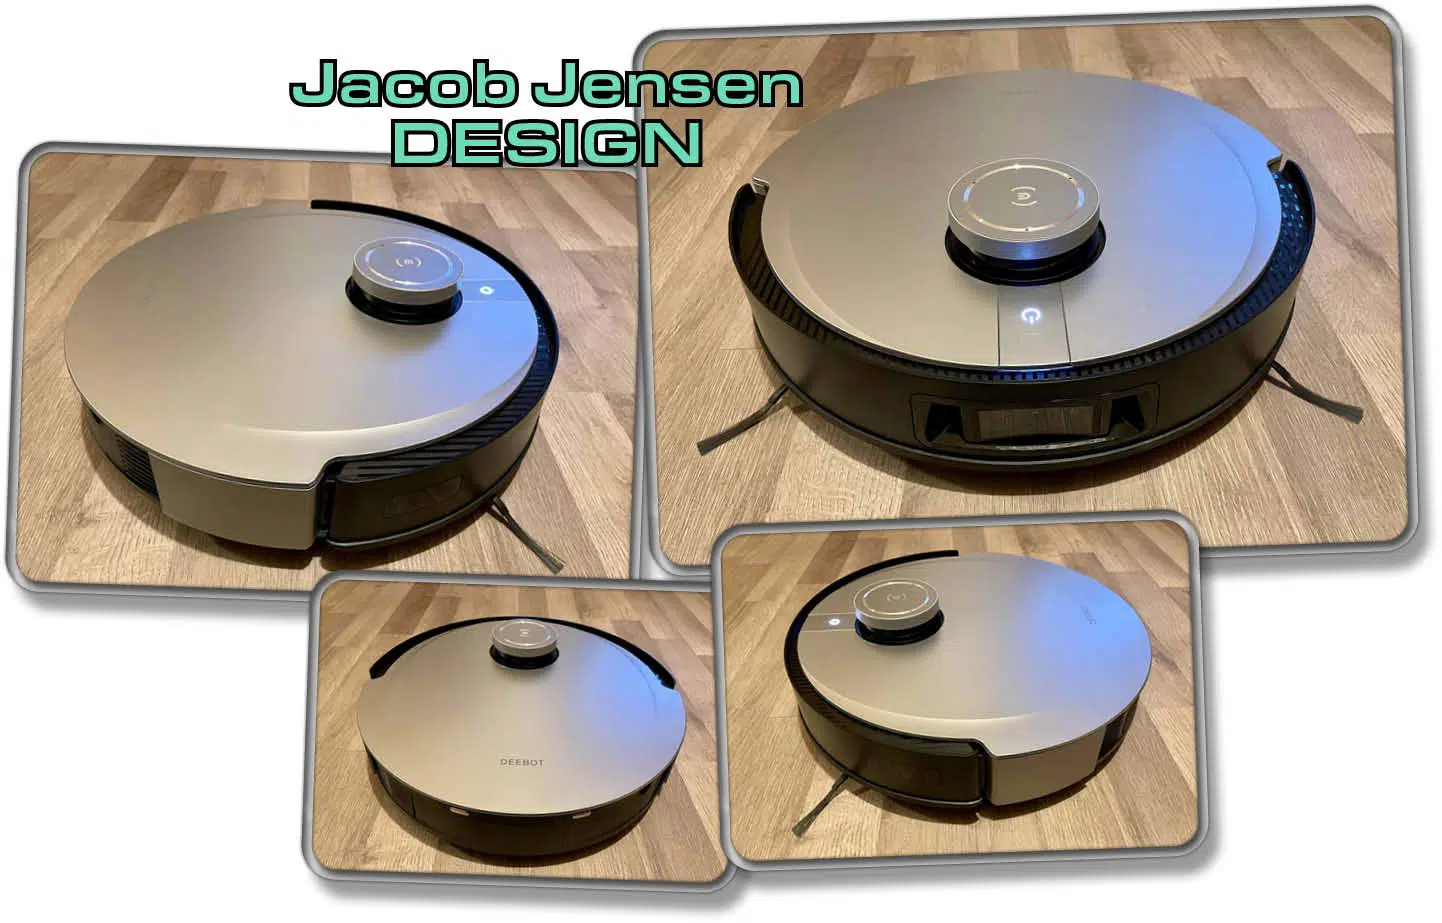 Der ECOVACS DEEBOT X1 OMNI wurde von Grund auf von Jacob Jensen, dem berühmten Designer gestaltet.